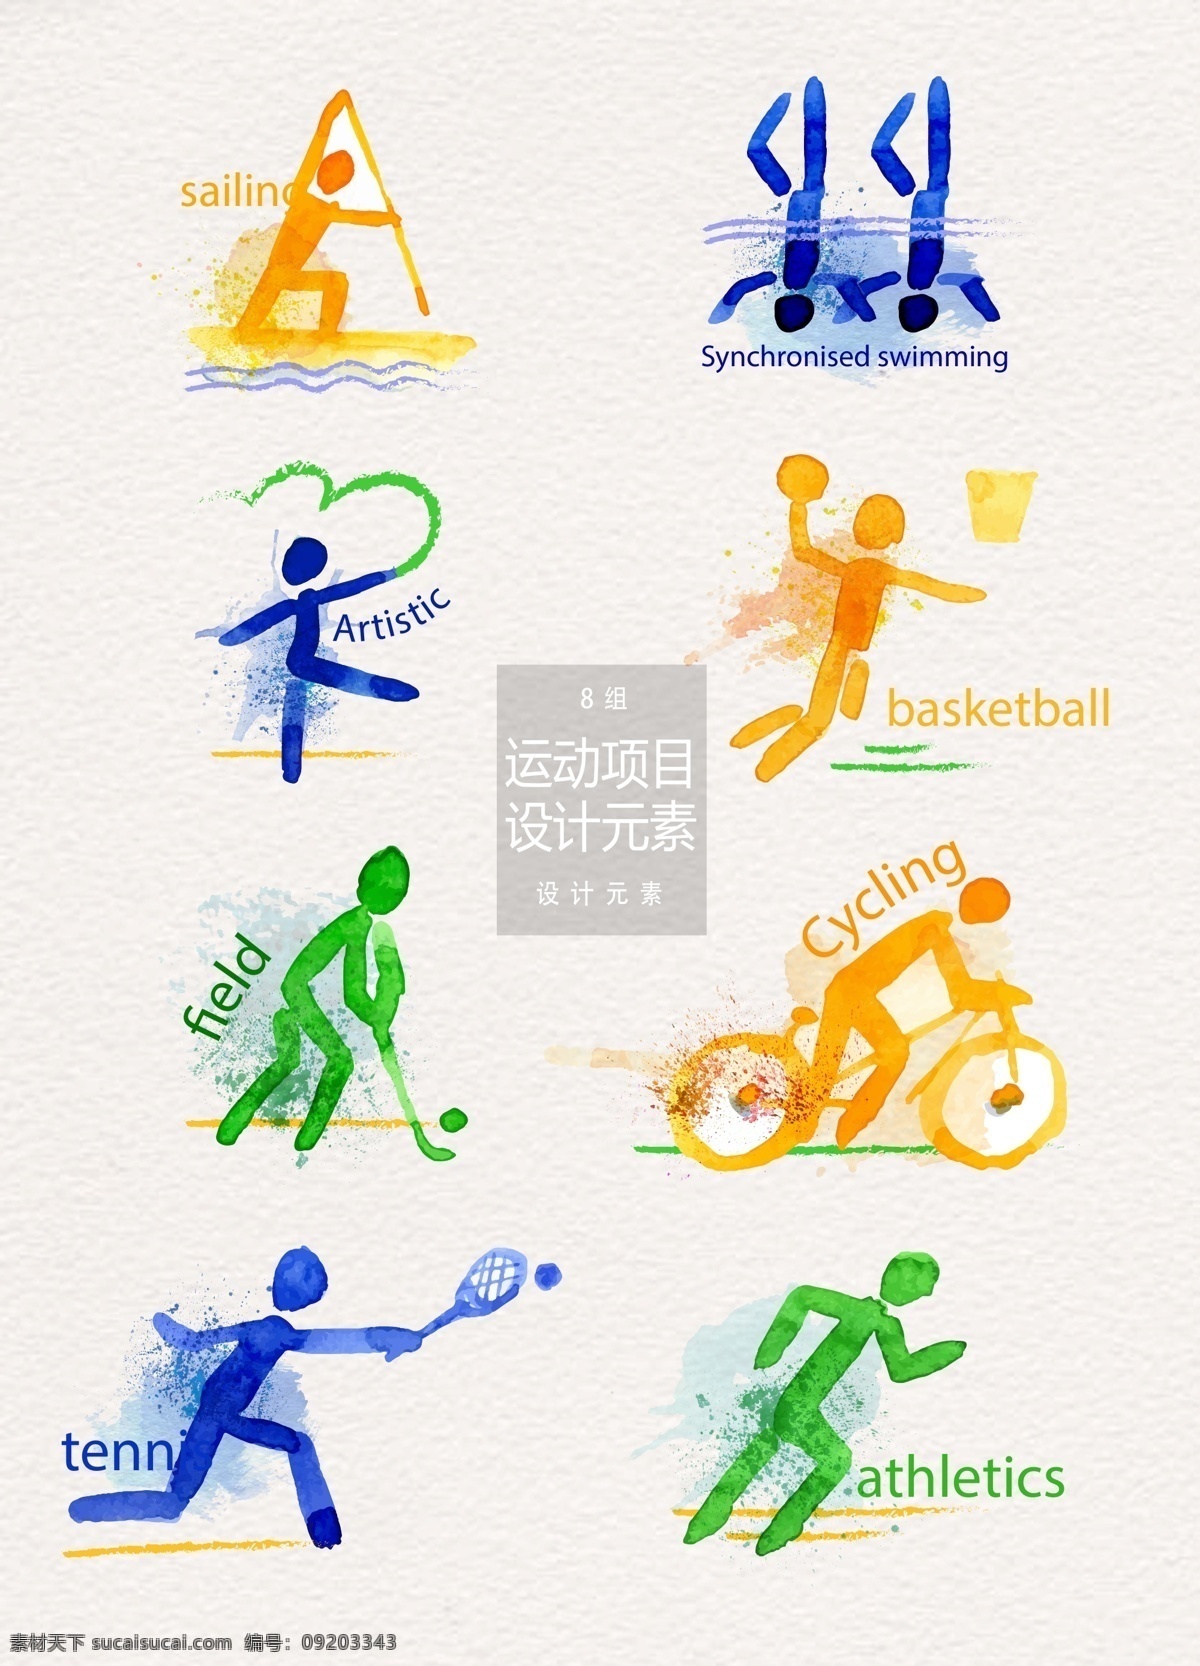 水彩 运动 项目 标志设计 元素 设计元素 奥运 篮球 羽毛球 运动项目 运动小人 水彩笔刷 体操 花式溜冰